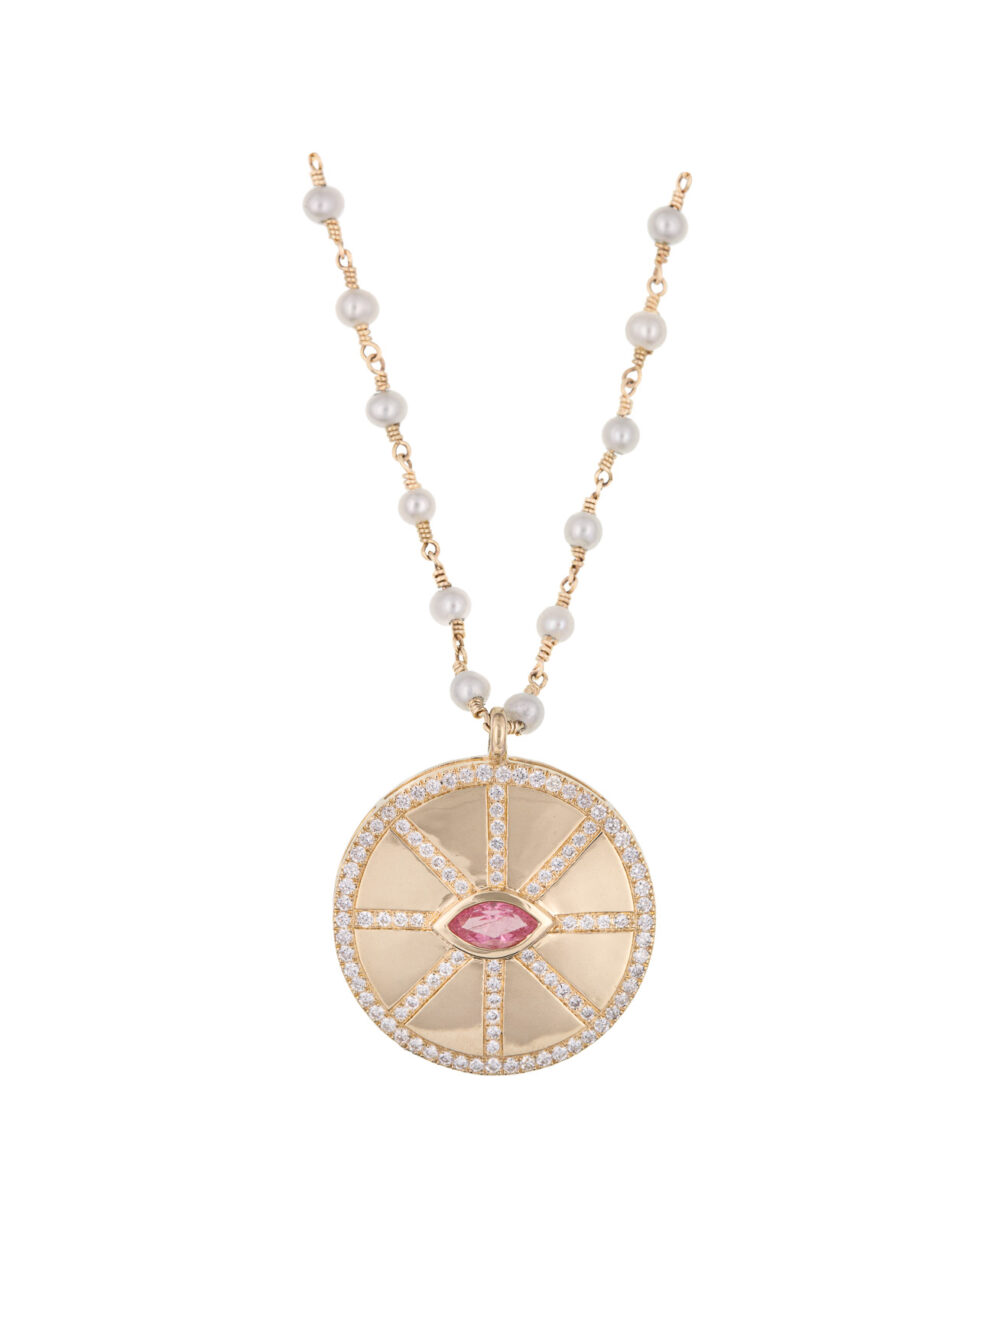 Diane necklace, Pearls, Diamond and Pink Tourmaline luj paris jewelry